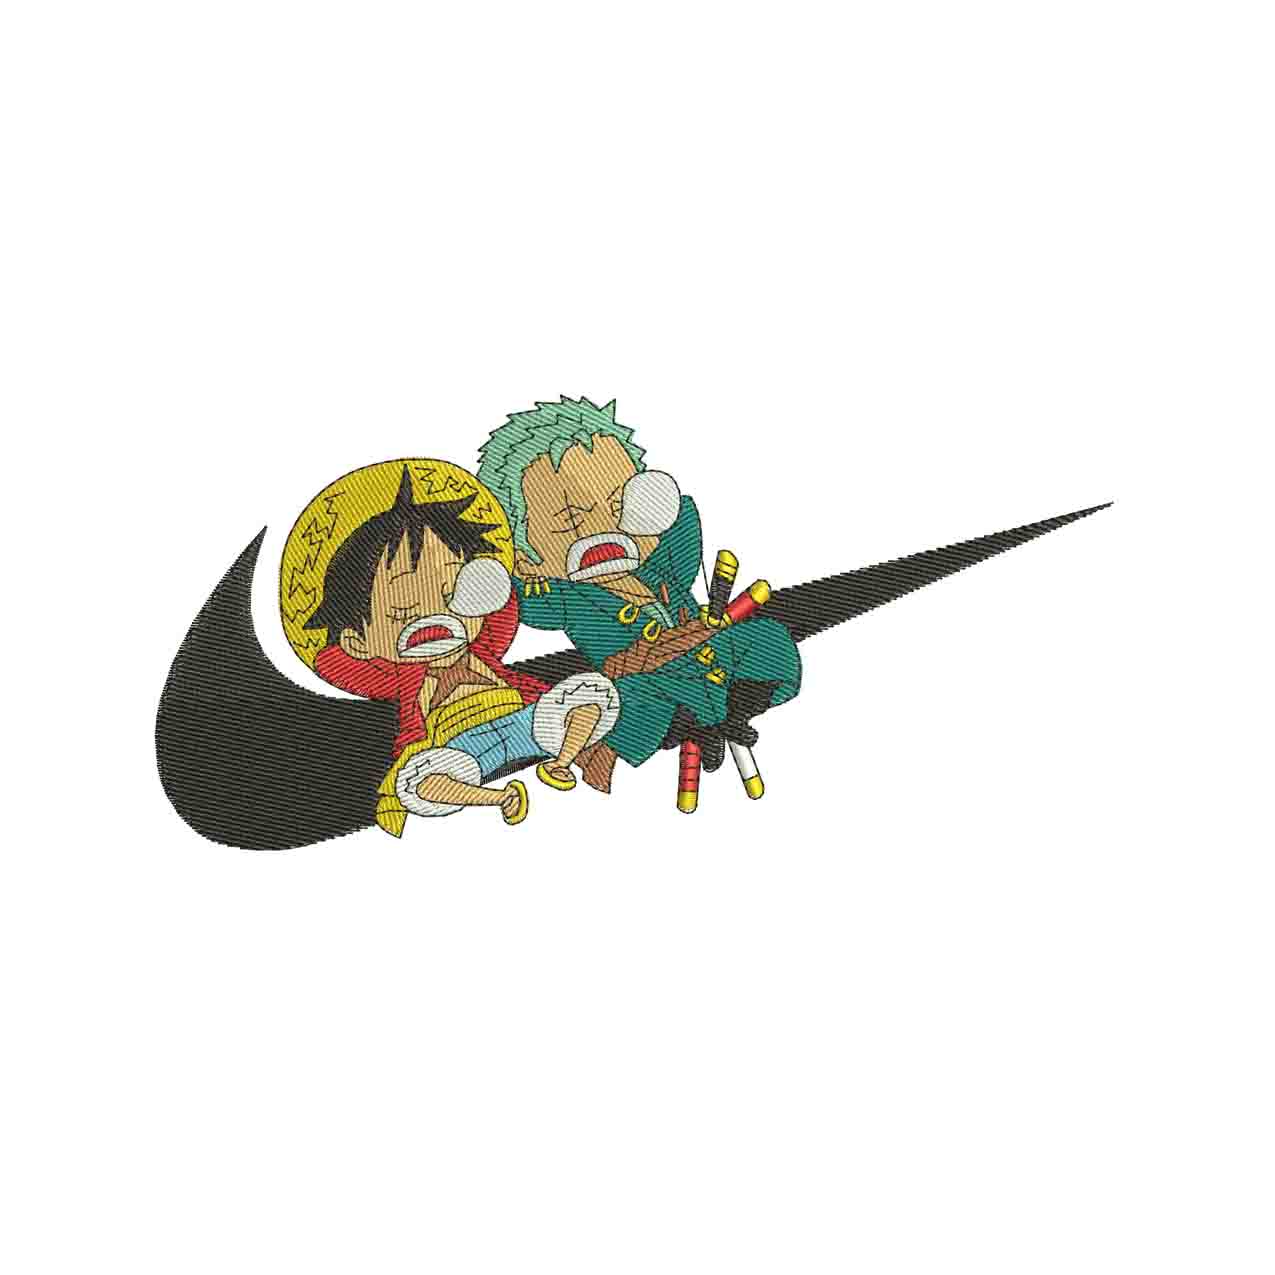 Swoosh Luffy and zorro sleeping